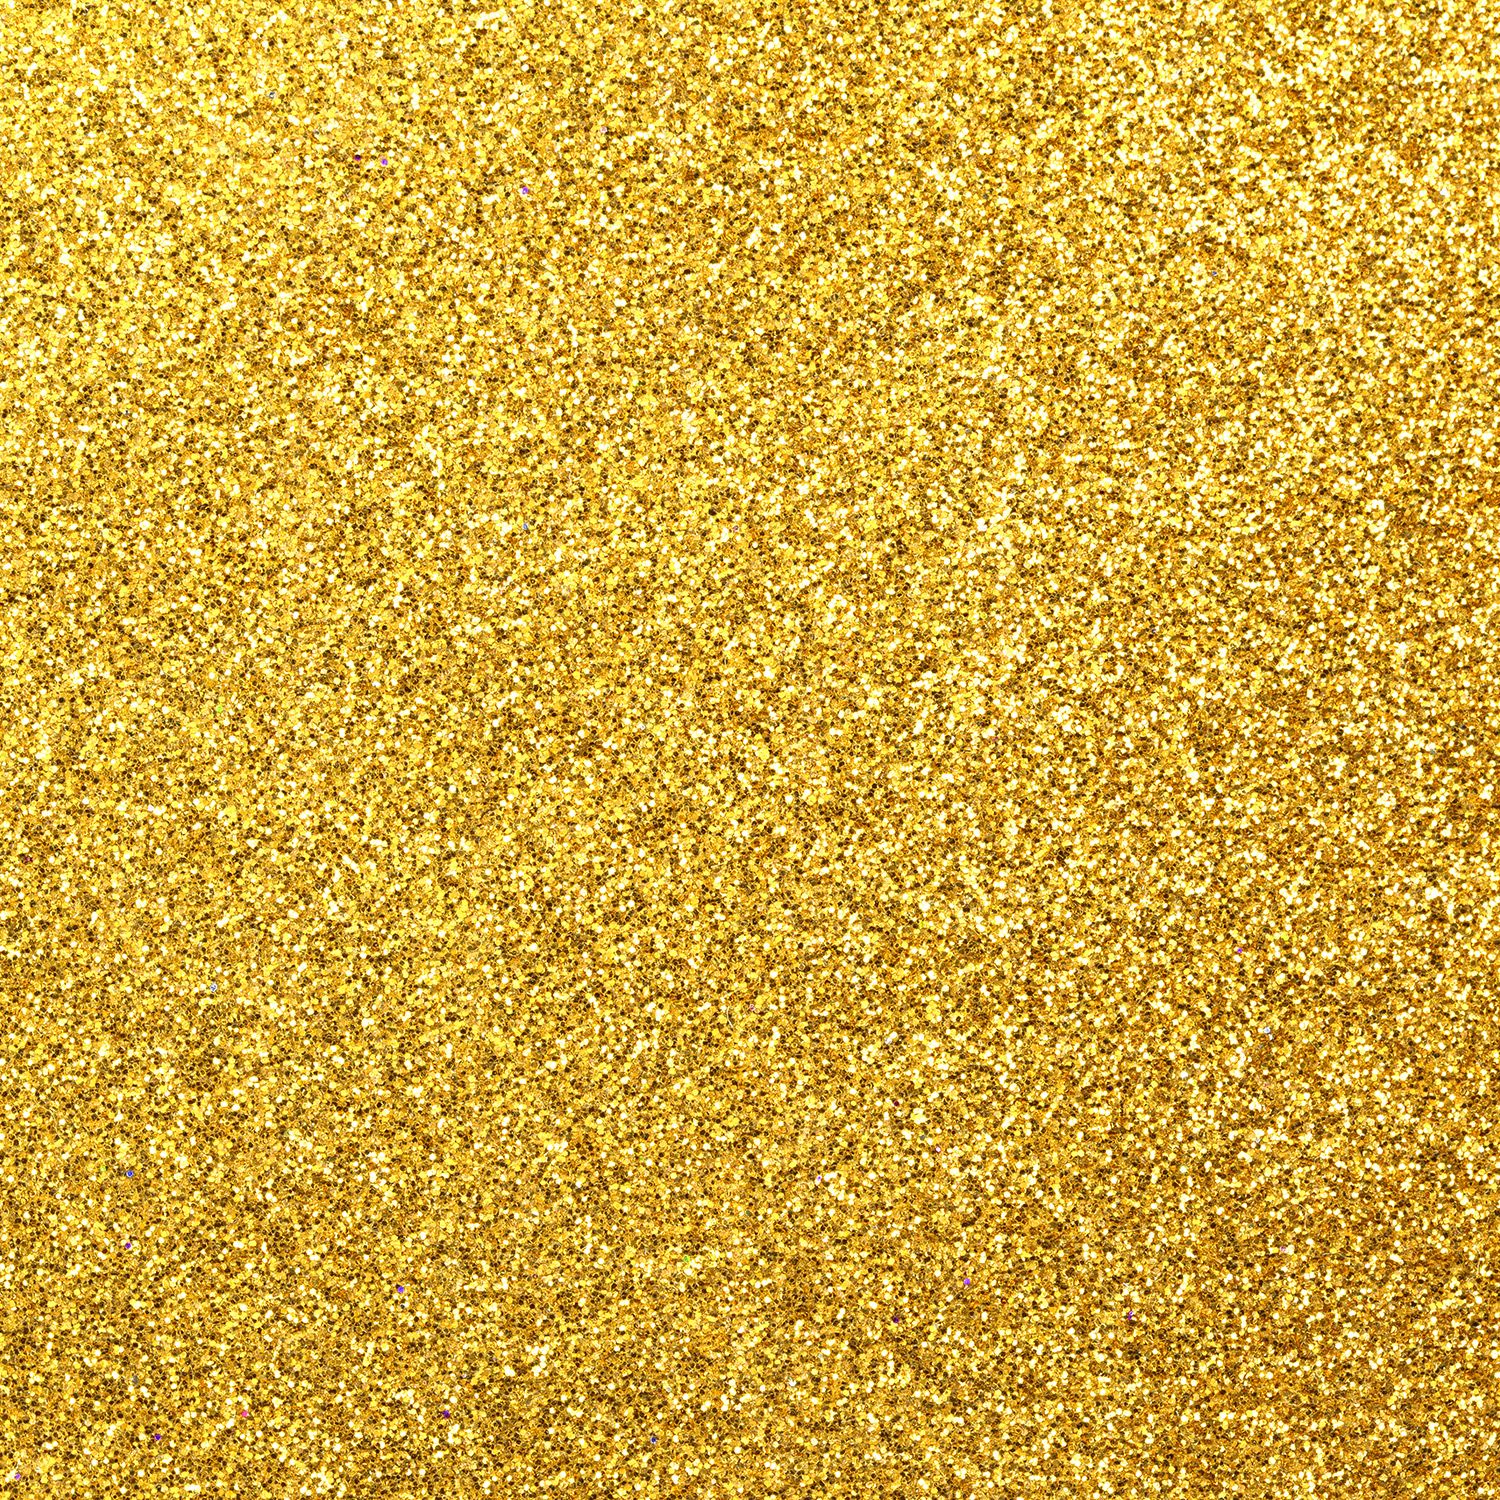 Gold Glitter Wallpaper Gold Glitter Wallpaper Background